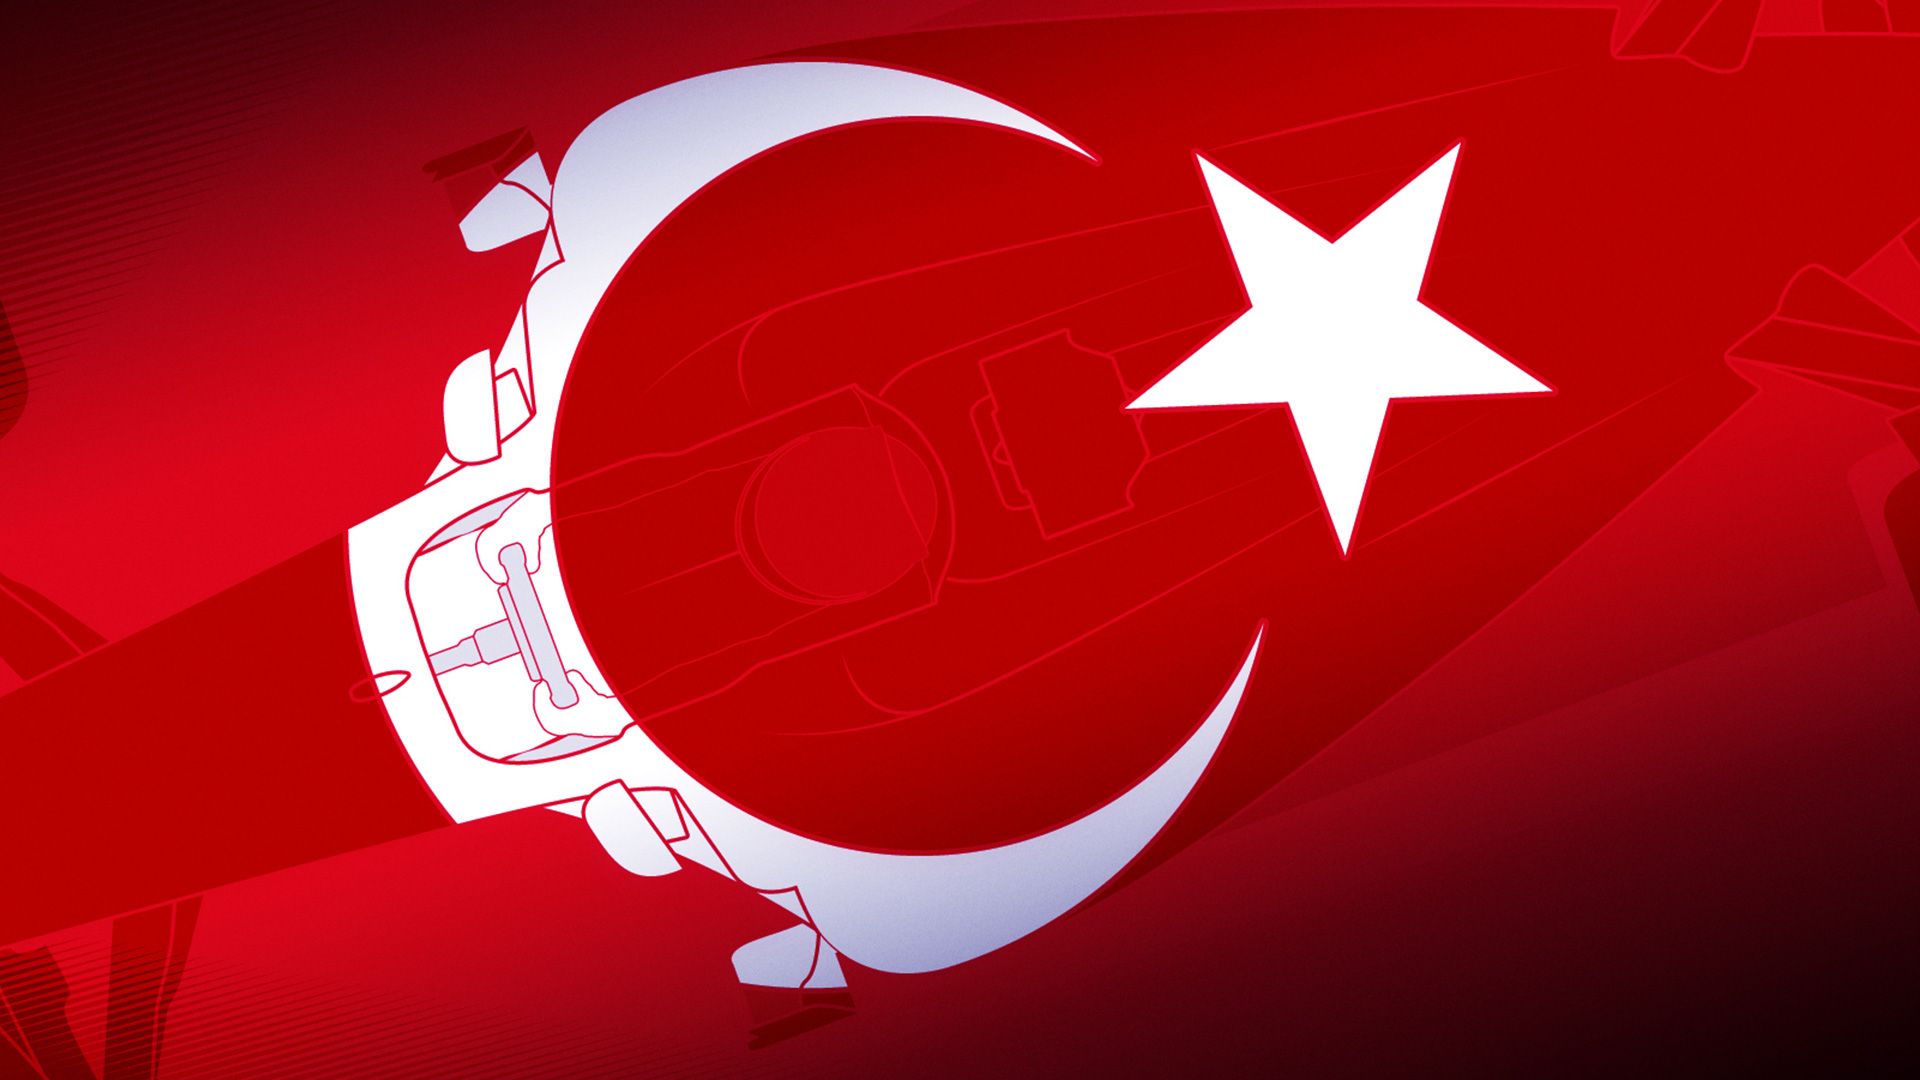 Turk bayragi resimi 3